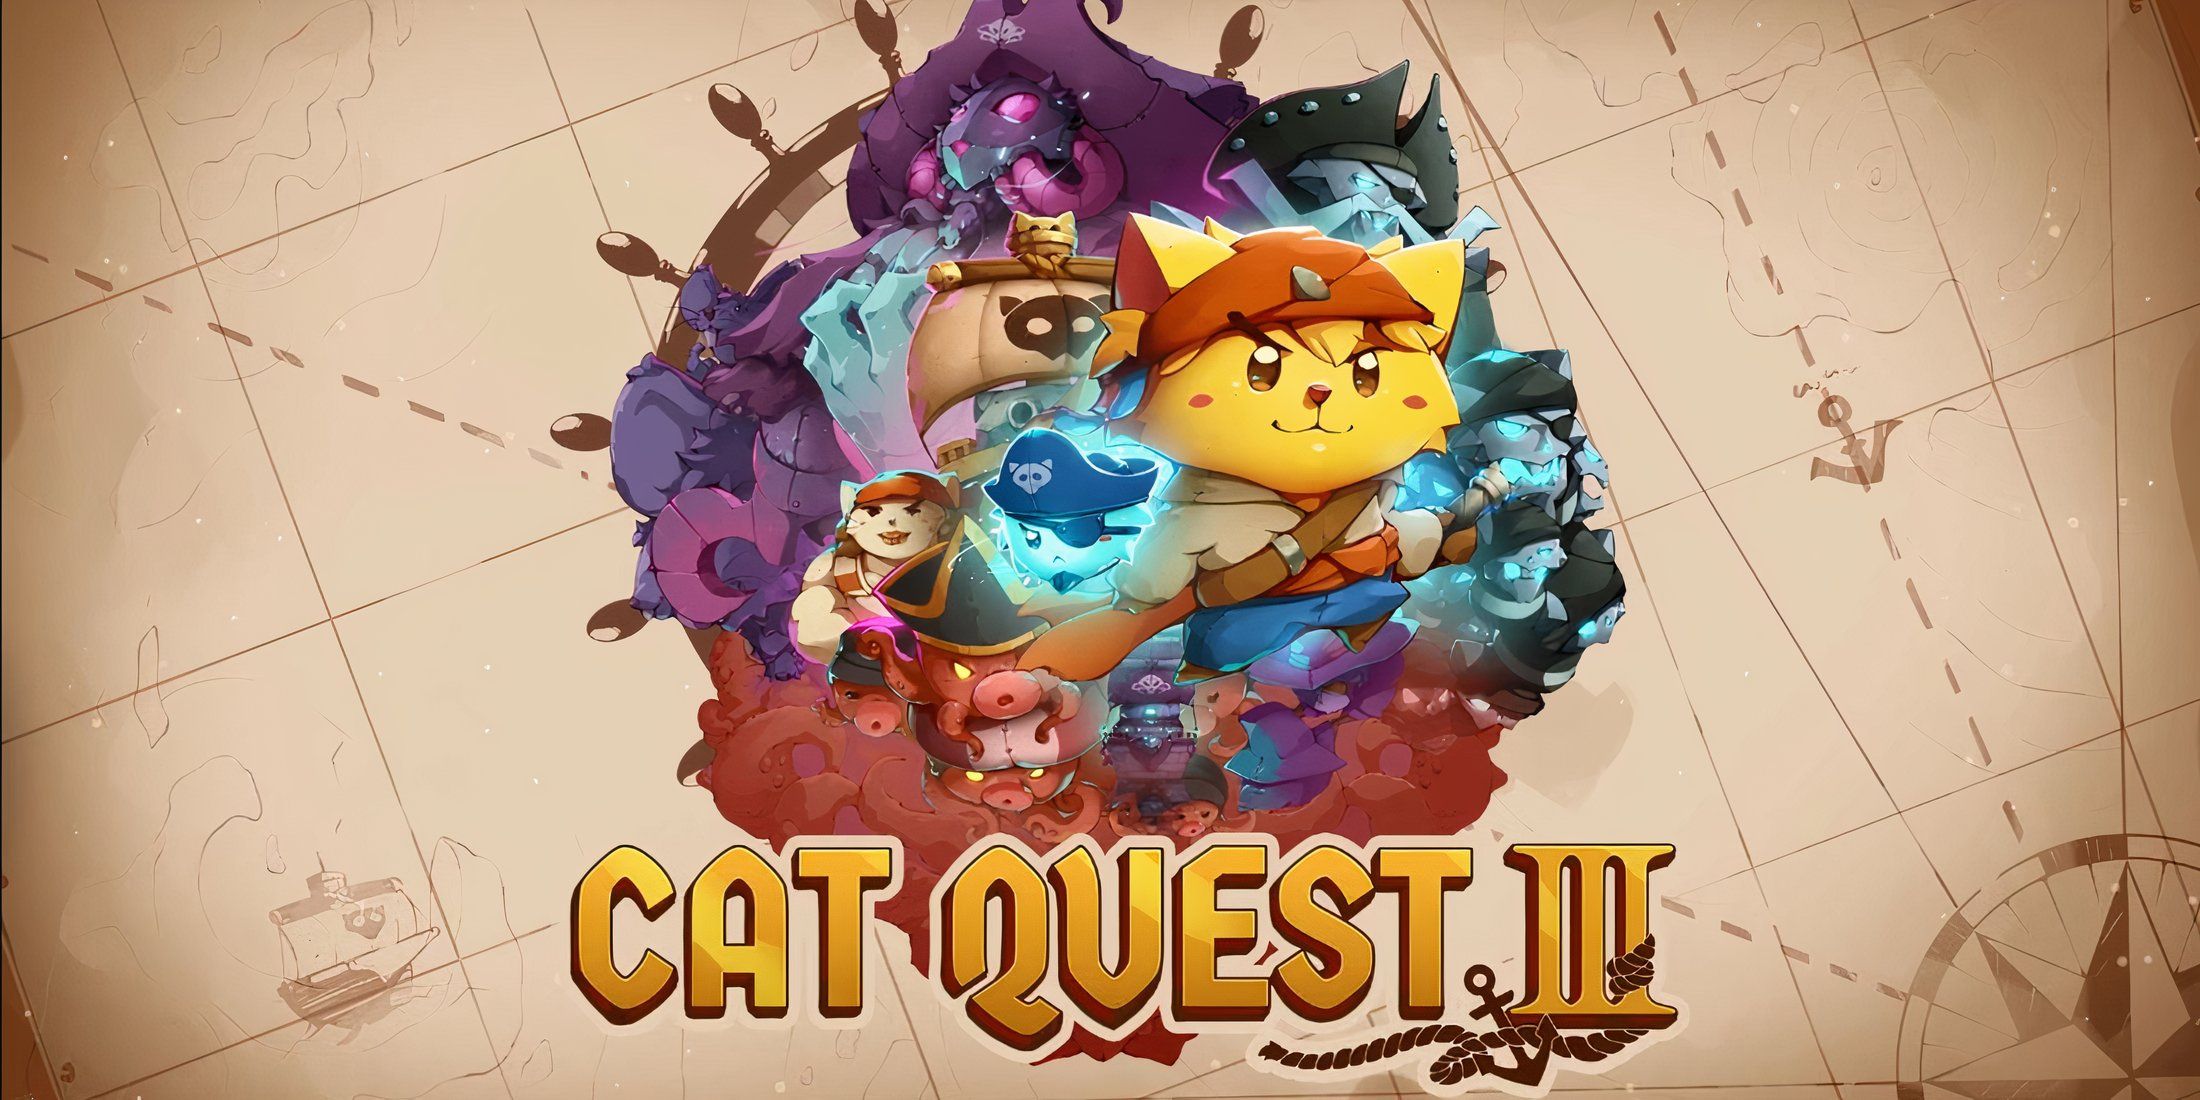 cat quest 3 trailer thumb